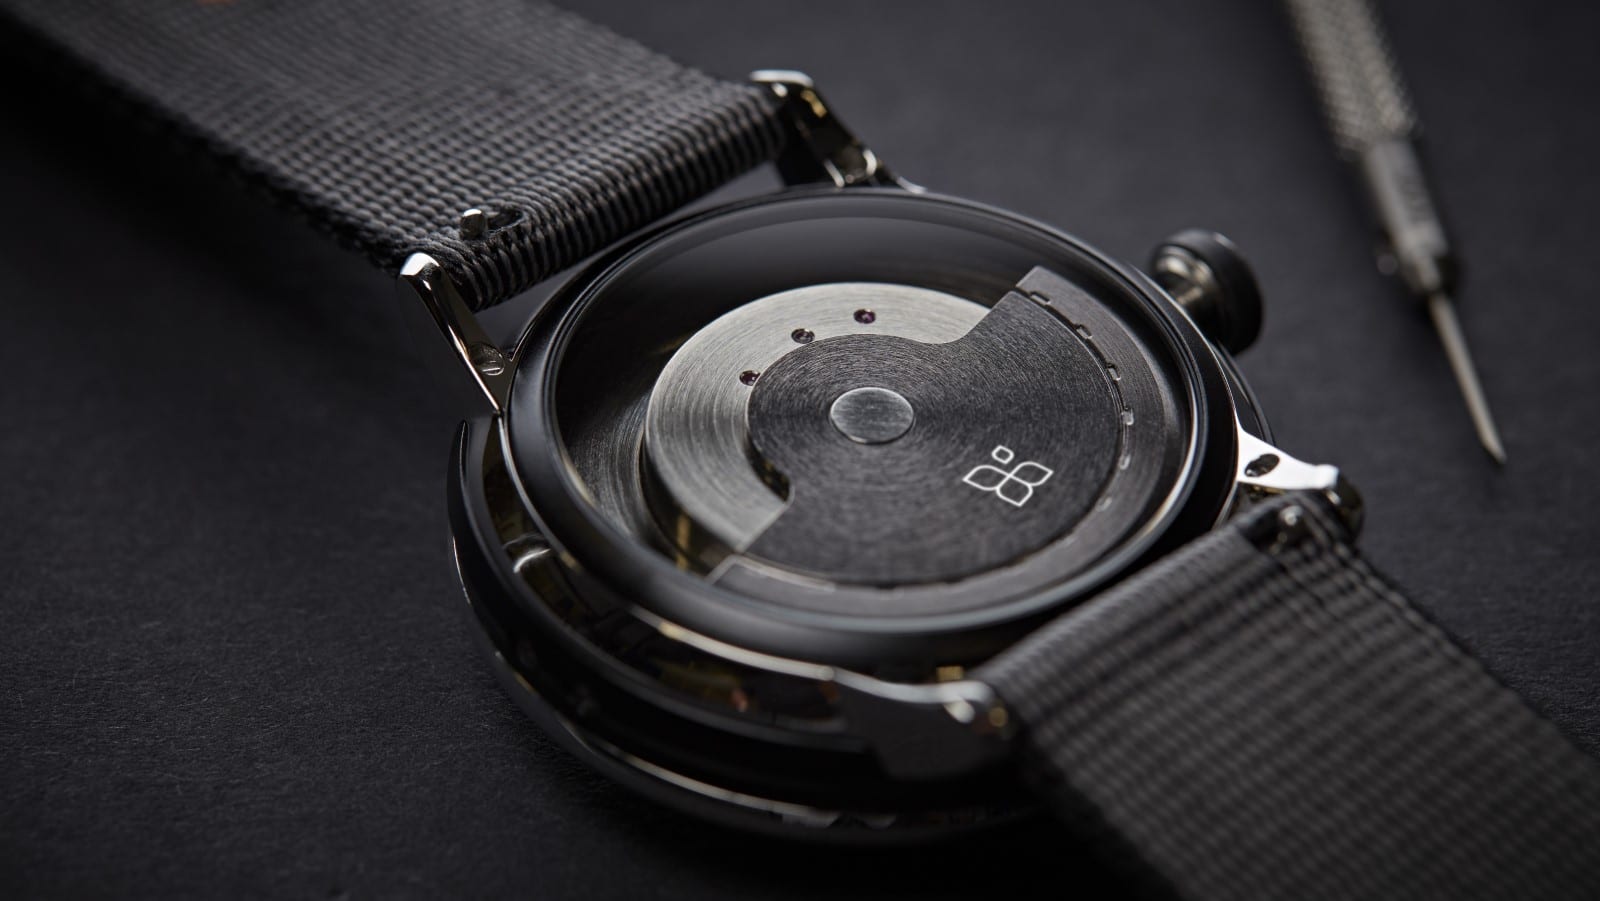 Detta hybrid smartwatch från Sequent får sin kraft från dina rörelser 1